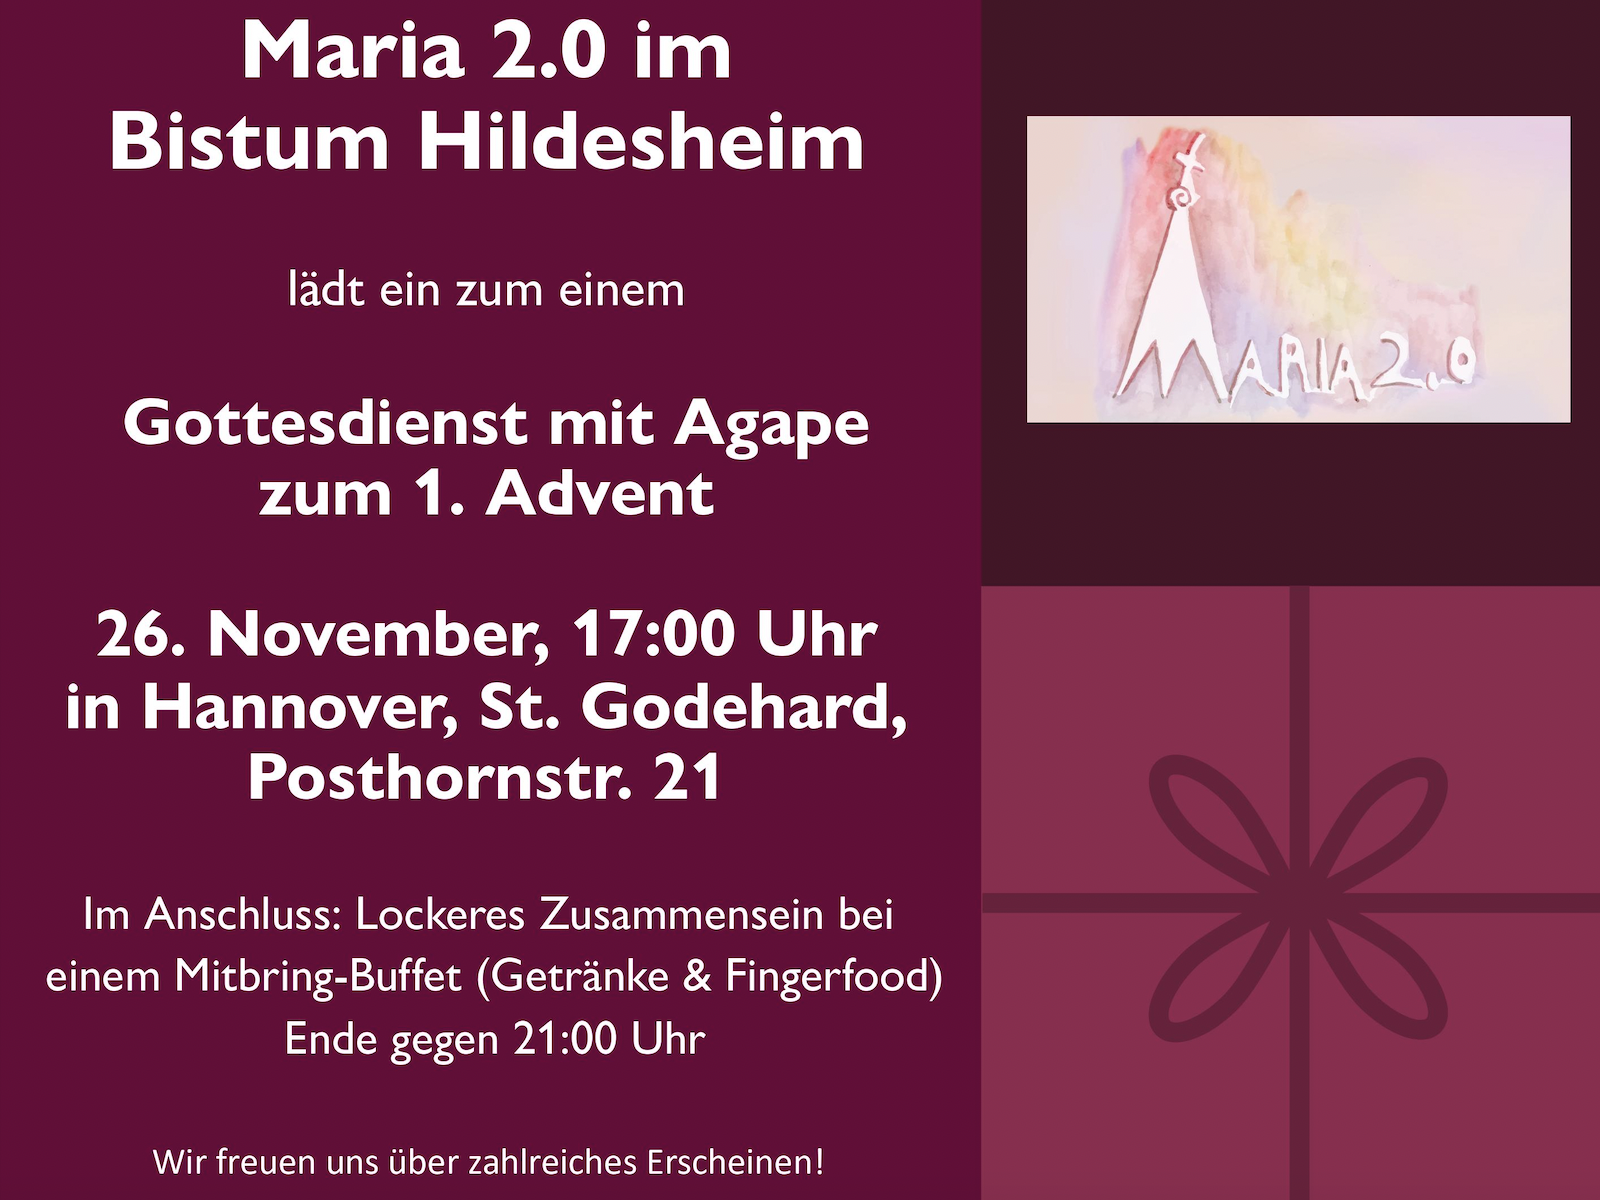 Gottesdienst mit Agape zum 1. Advent, 26. November, um 17:00 Uhr in Hannover